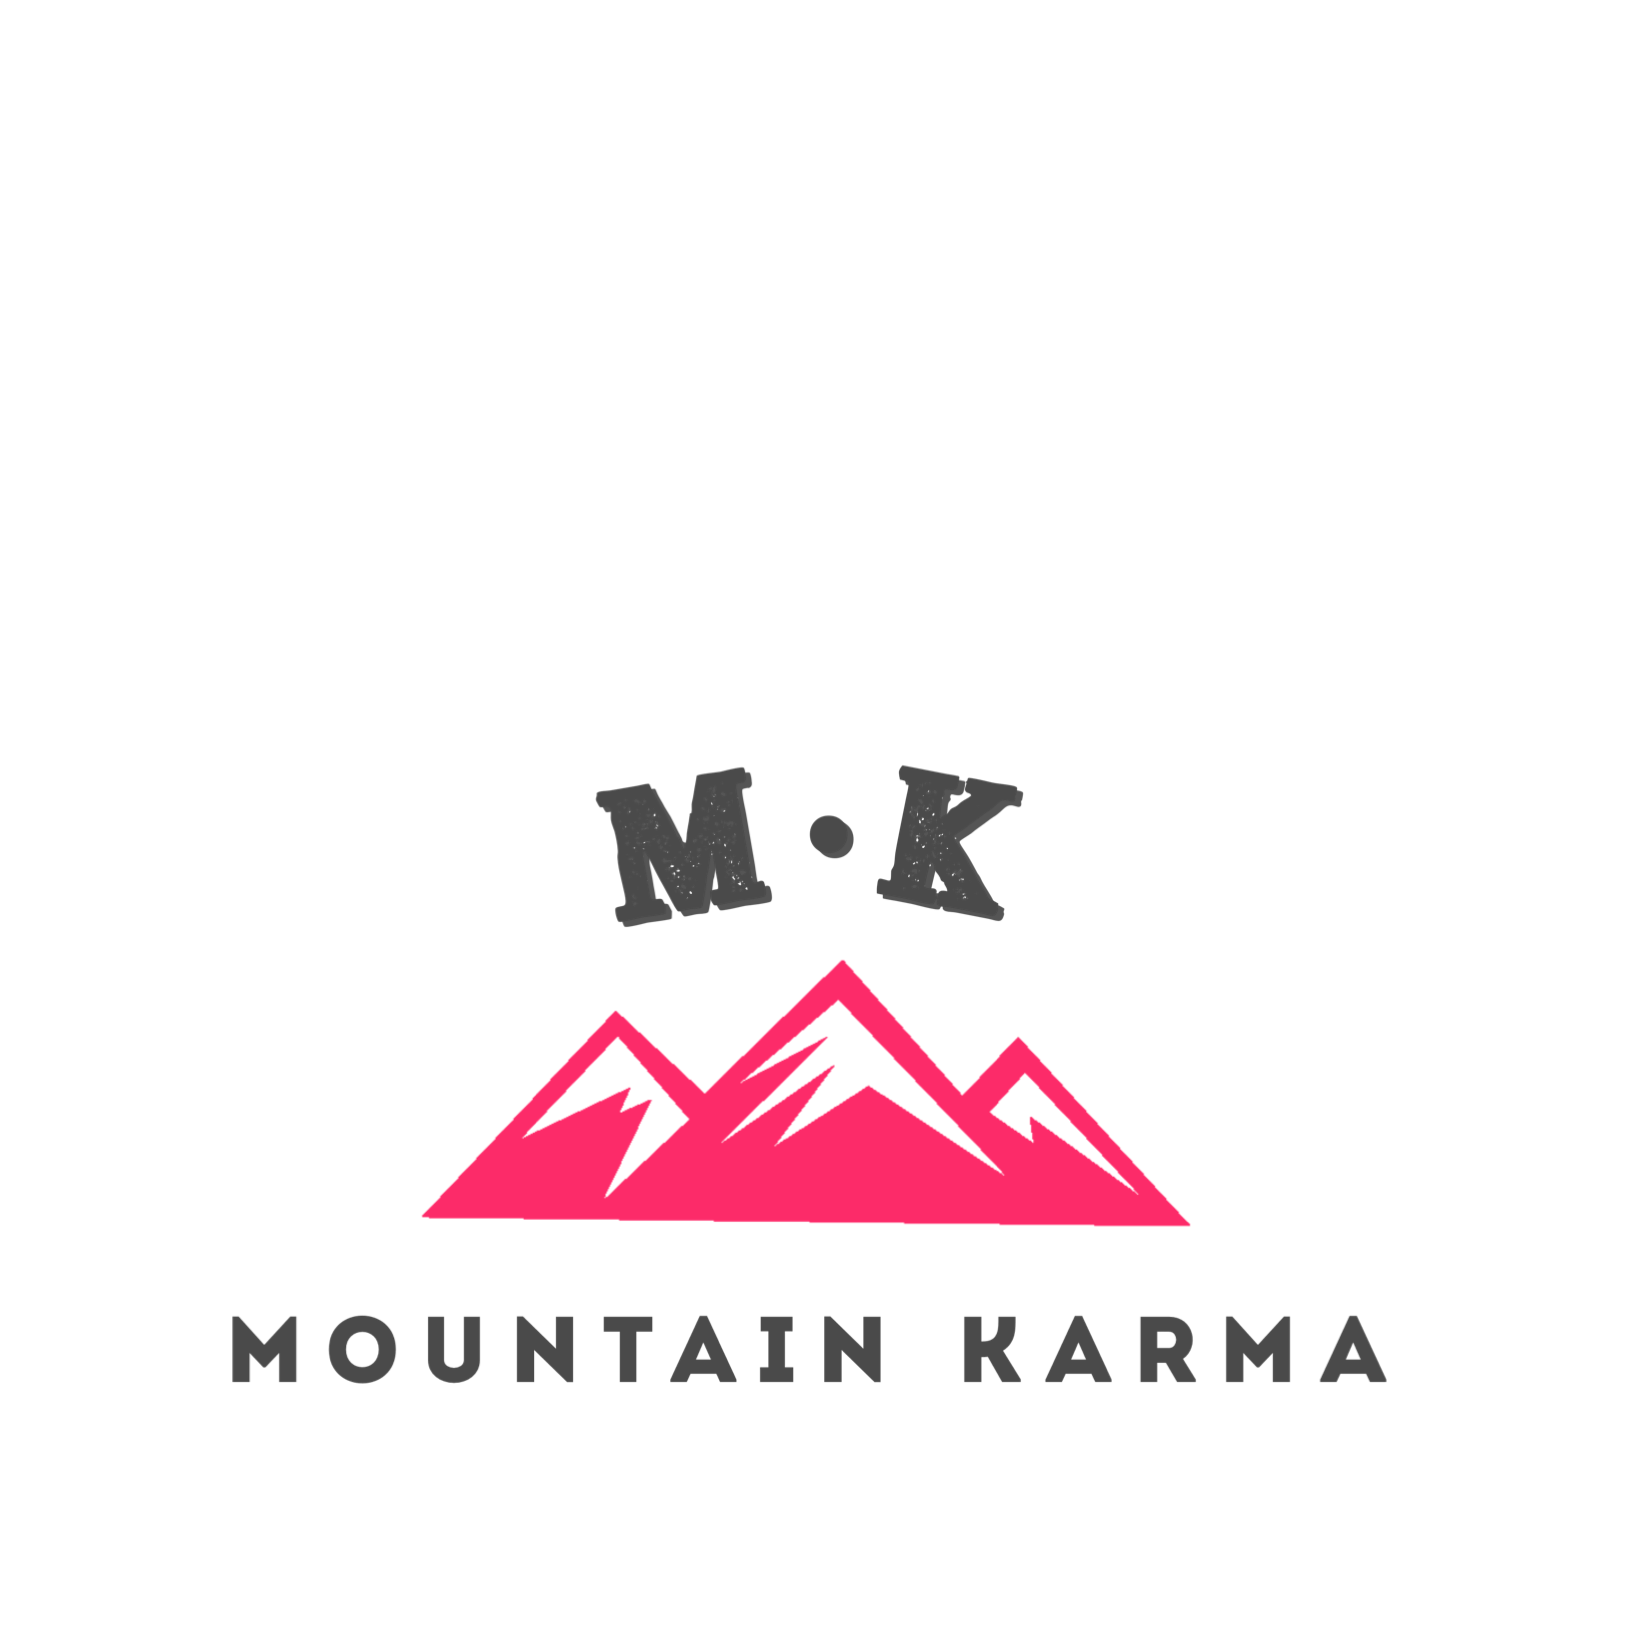 MOUNTAIN KARMA